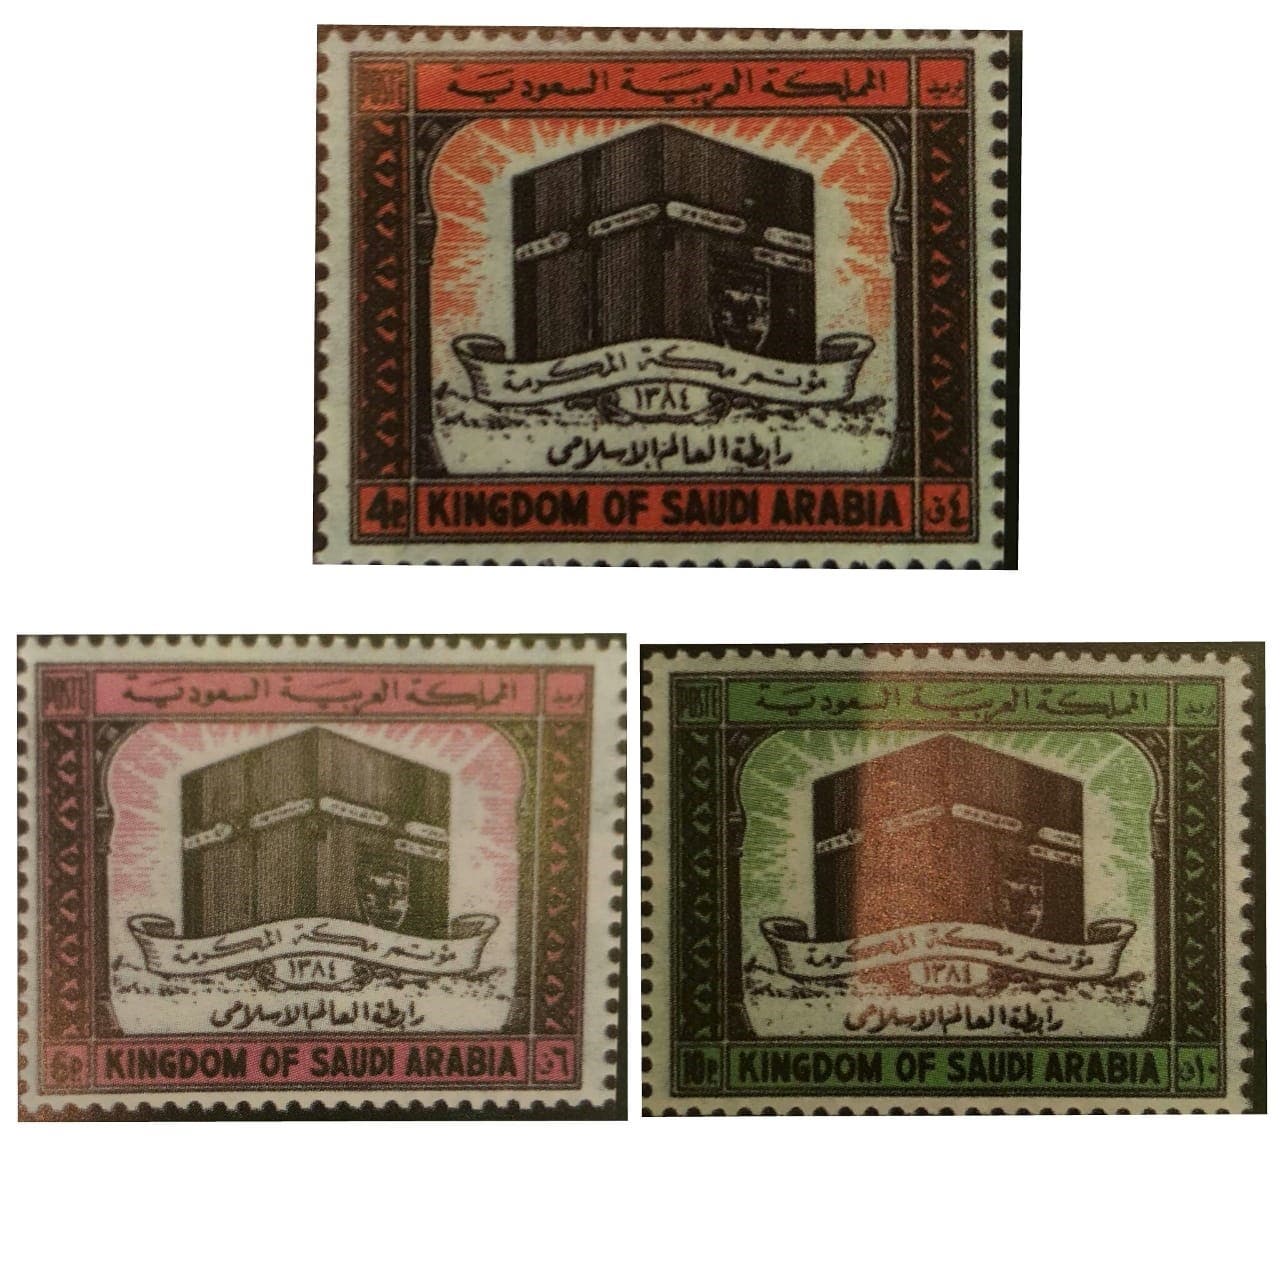 القيمة مائة جورج هانبيري  سعودي عشق جمع الطوابع منذ 3 عقود.. وهذه قصته